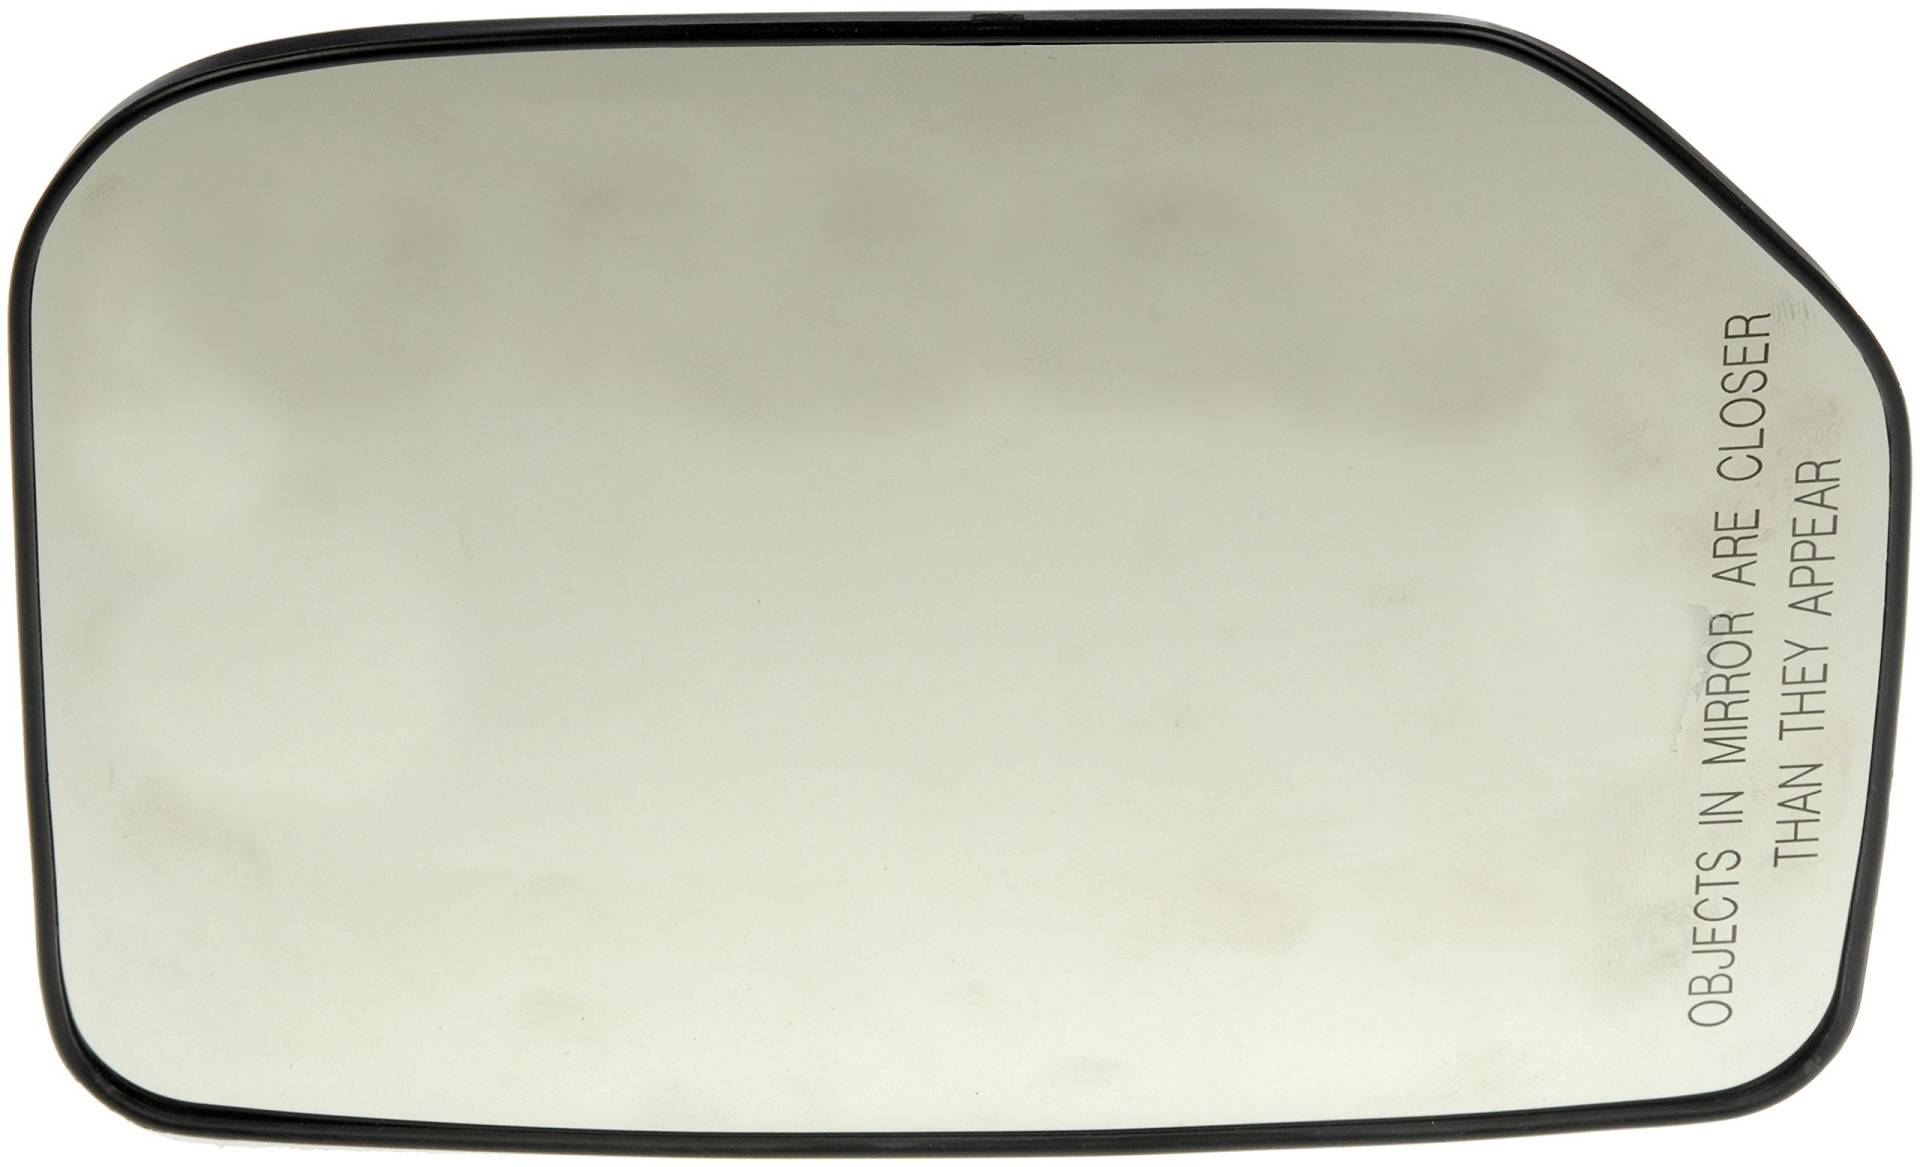 Dorman 56426 Spiegelglas für Beifahrerseite, nicht beheizt, mit Kunststoffrückseite. von Dorman